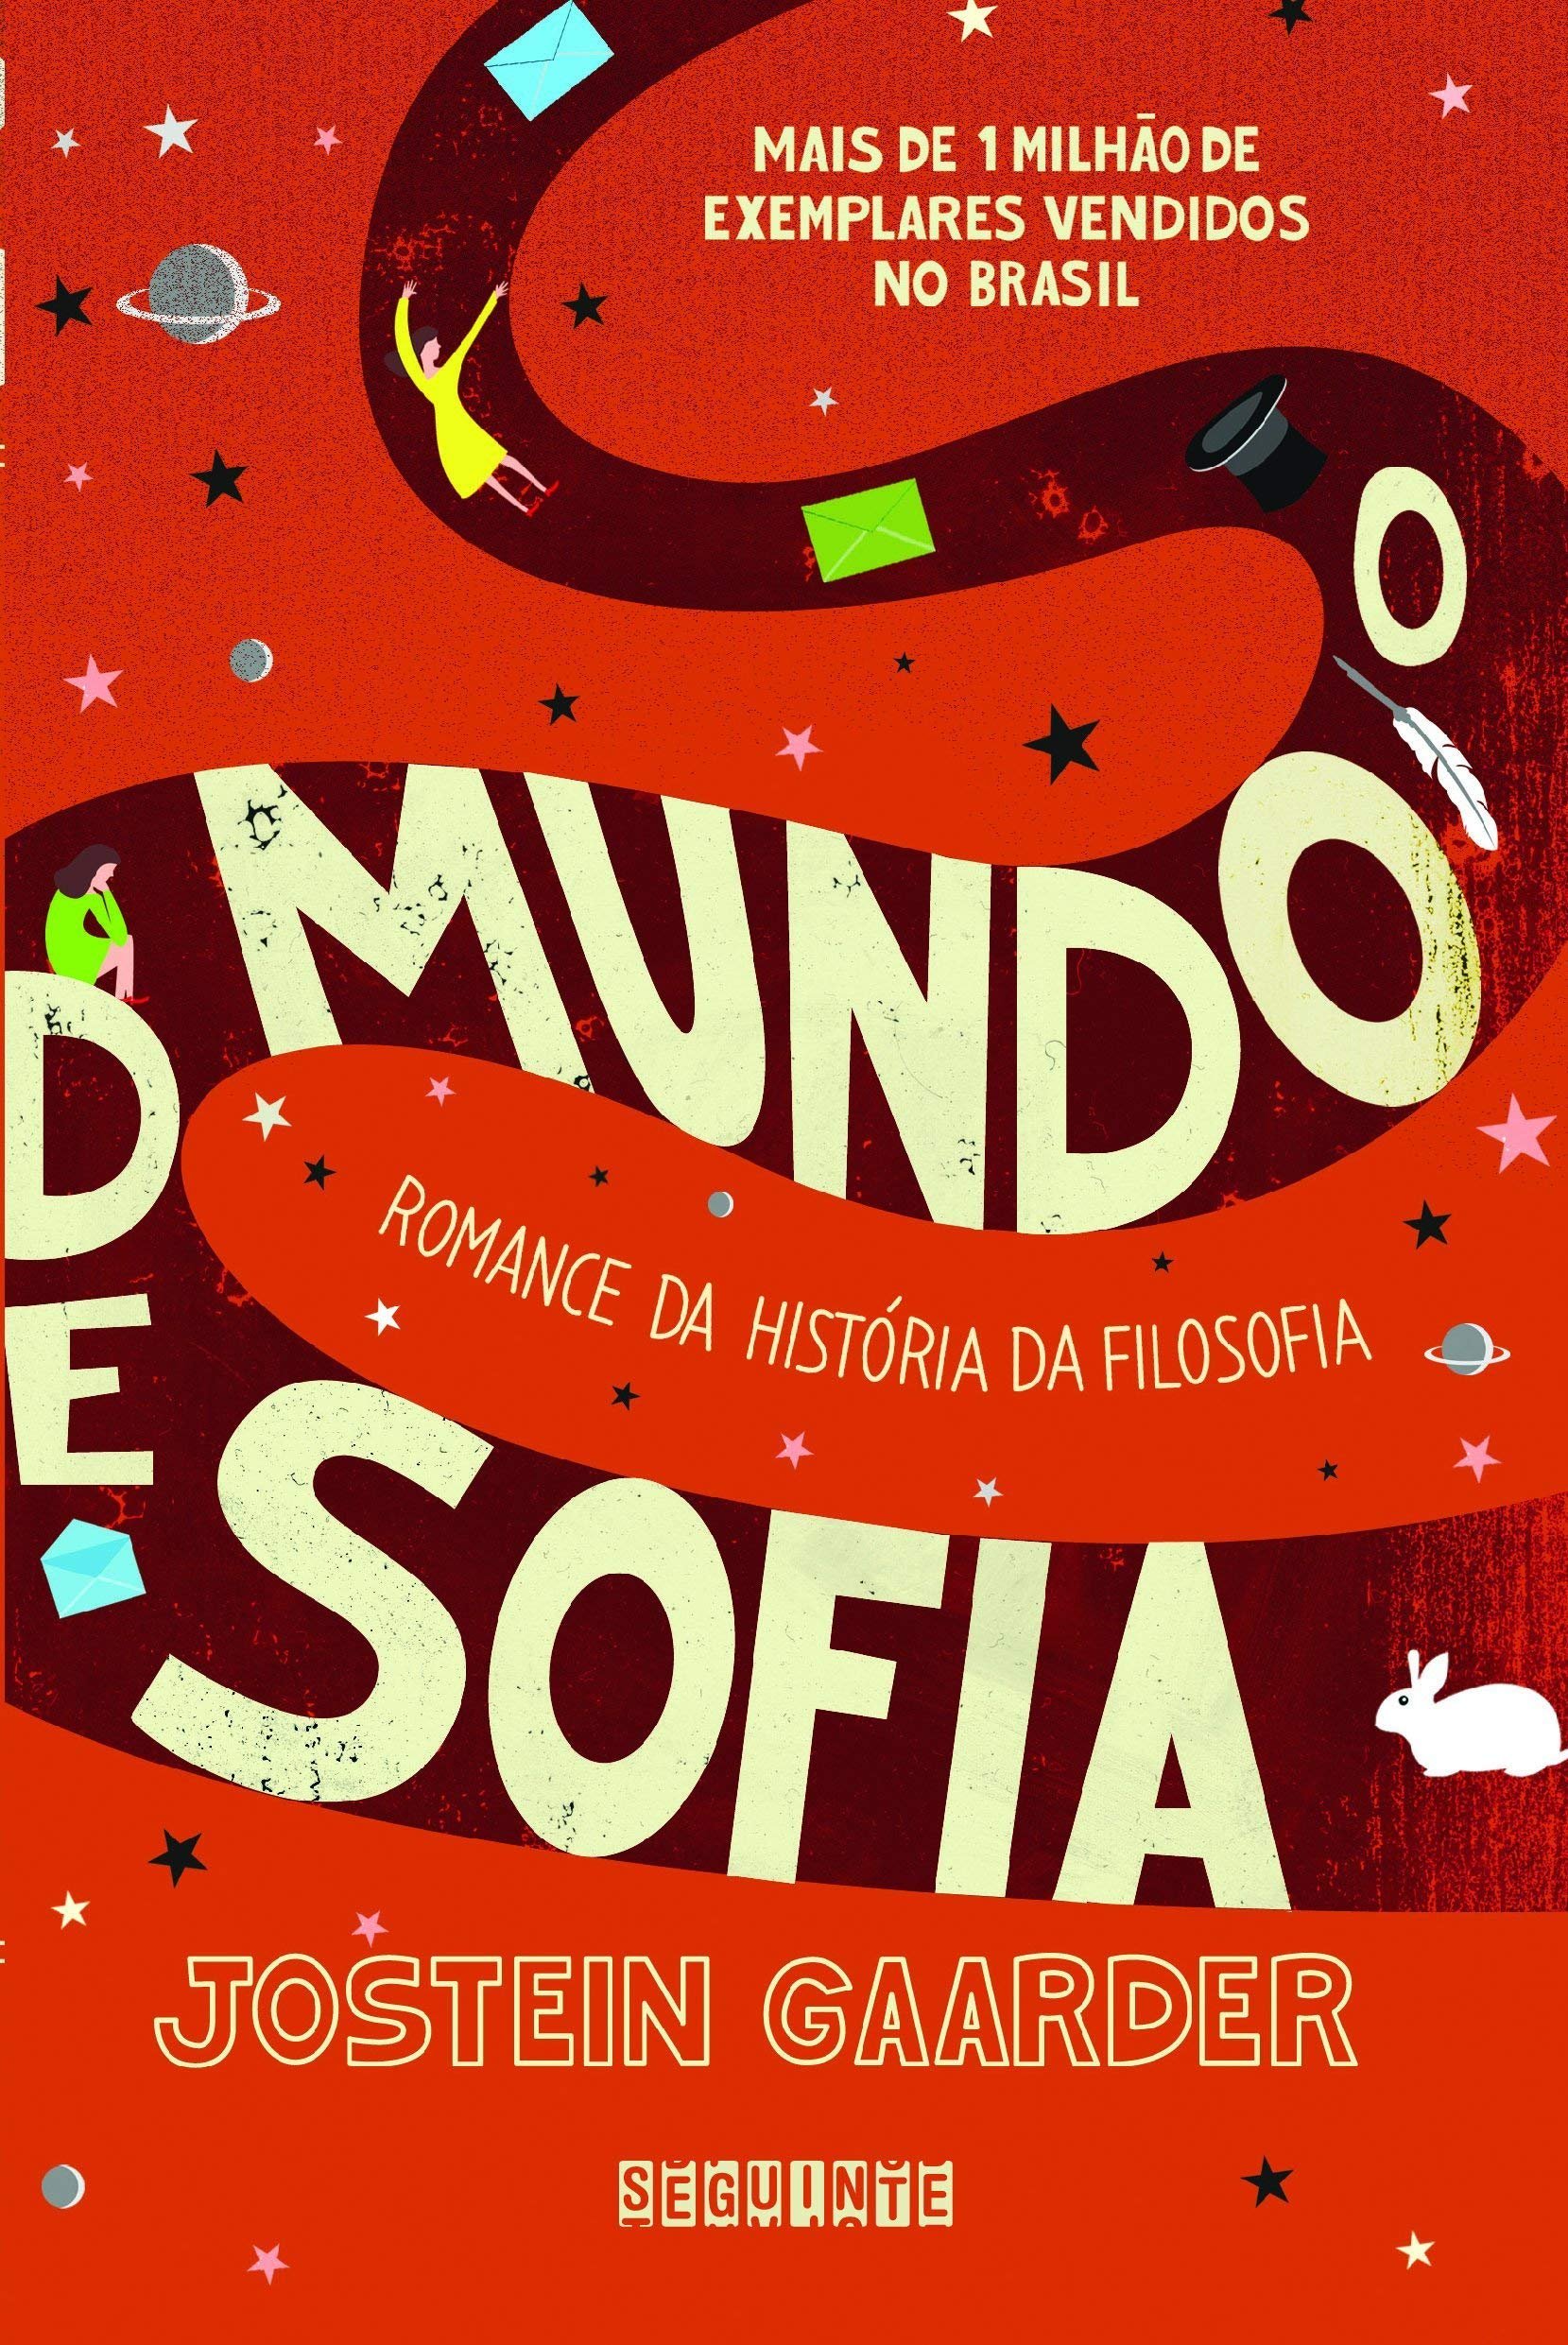 Capa do livro 'O Mundo de Sofia'.